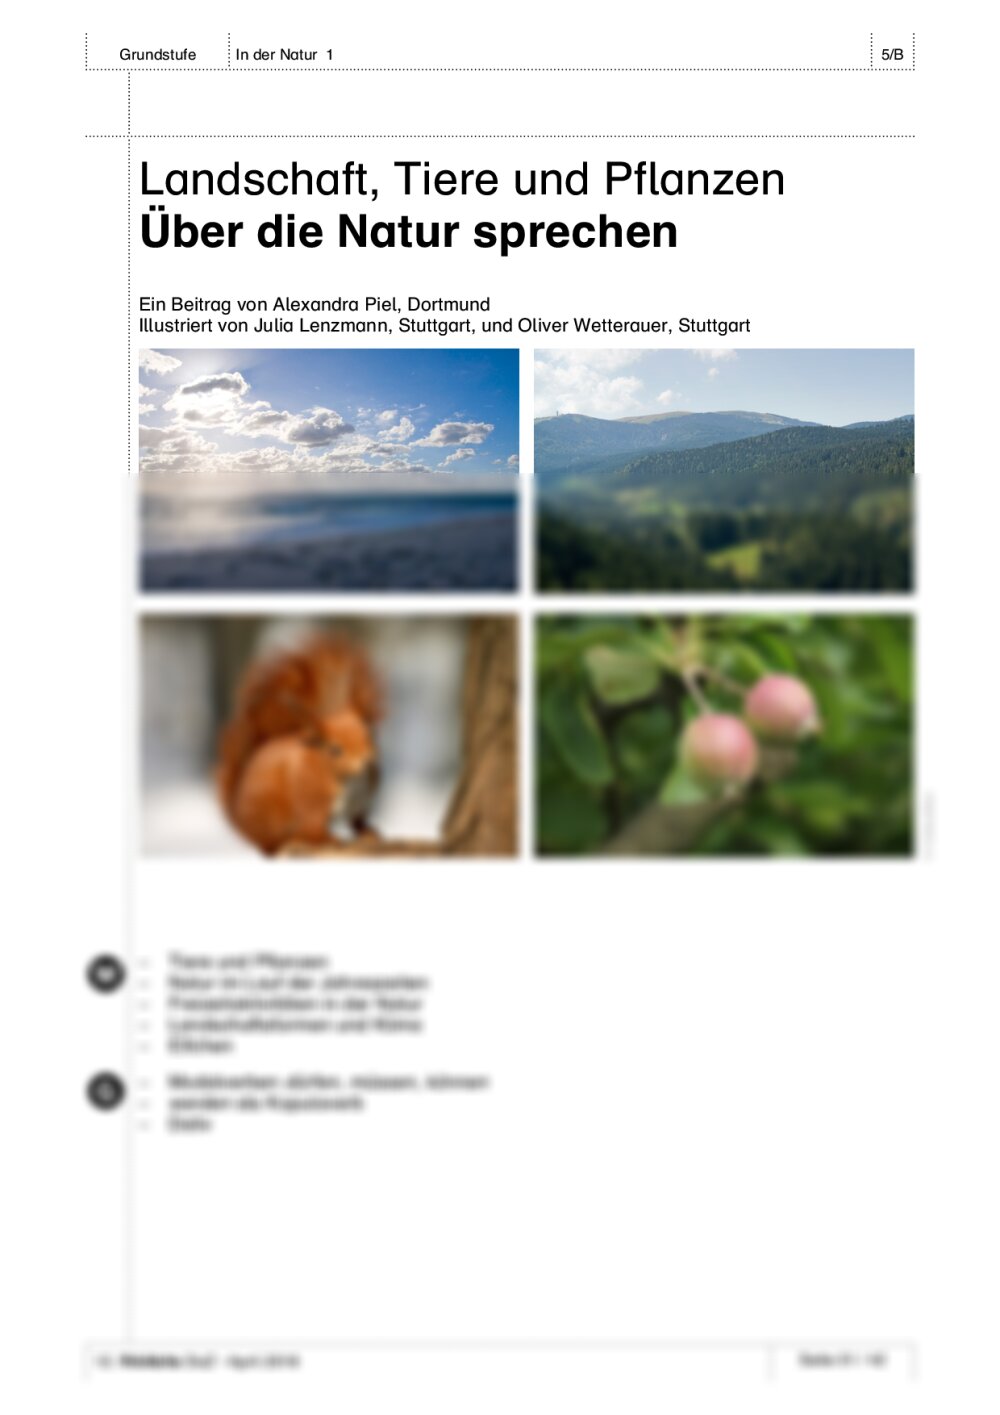 Über die Natur sprechen - Seite 1